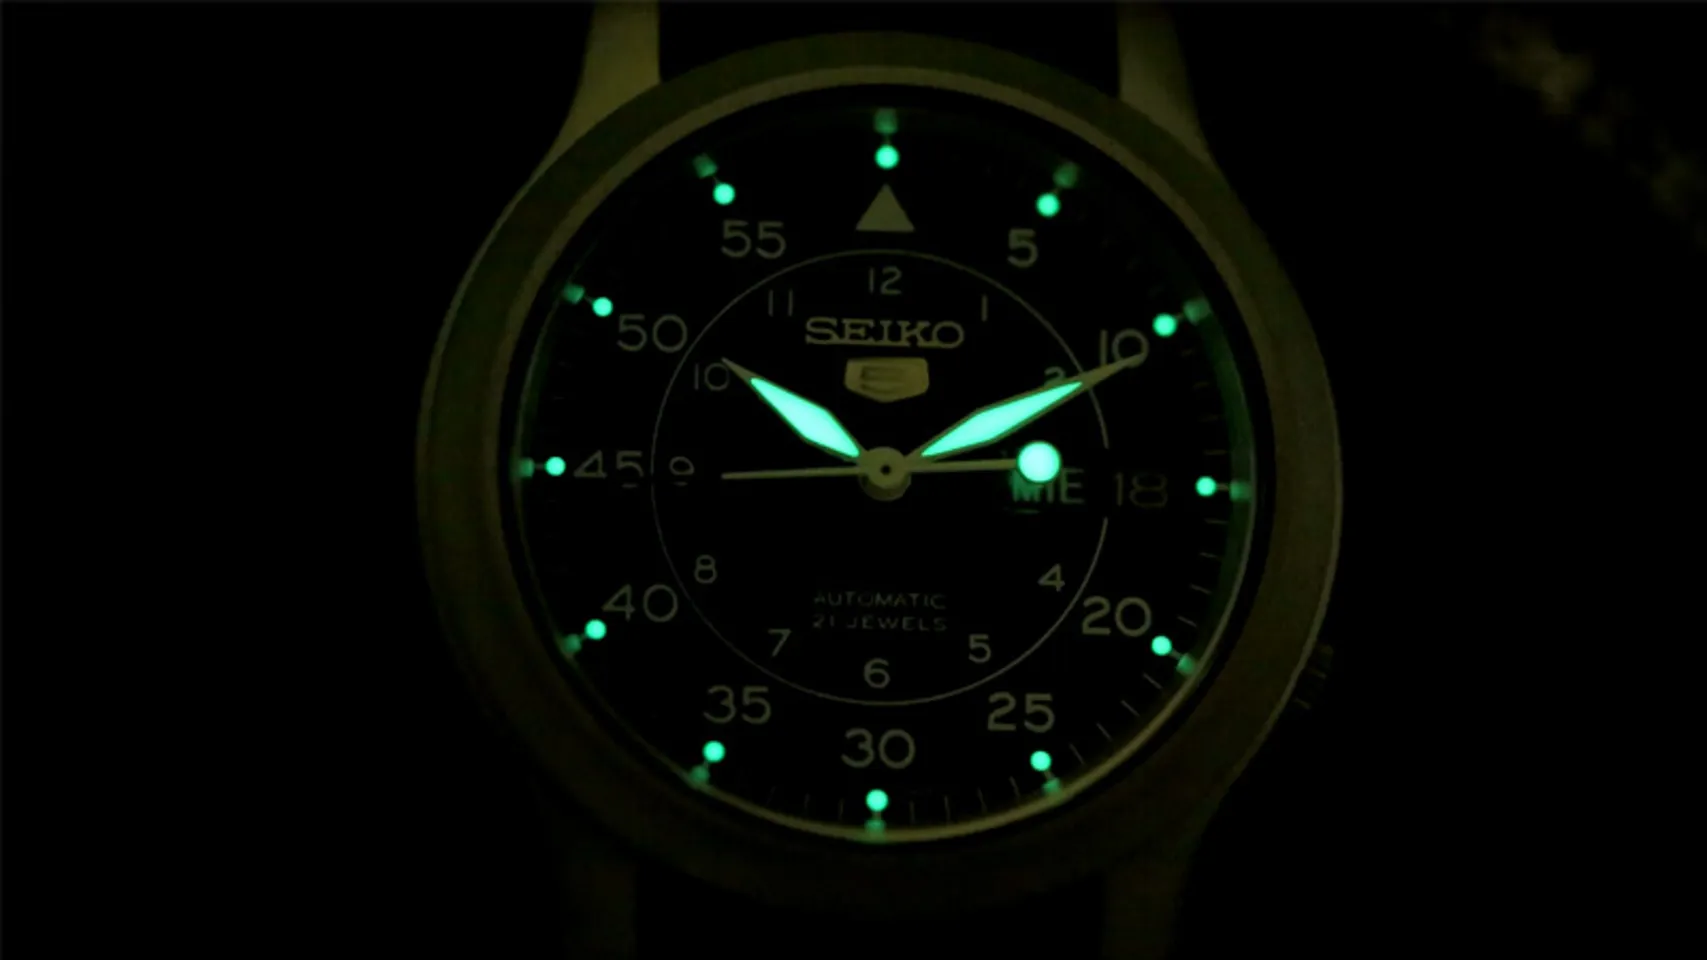 Đồng hồ Seiko 5 quân đội - Nổi bật trong bóng tối